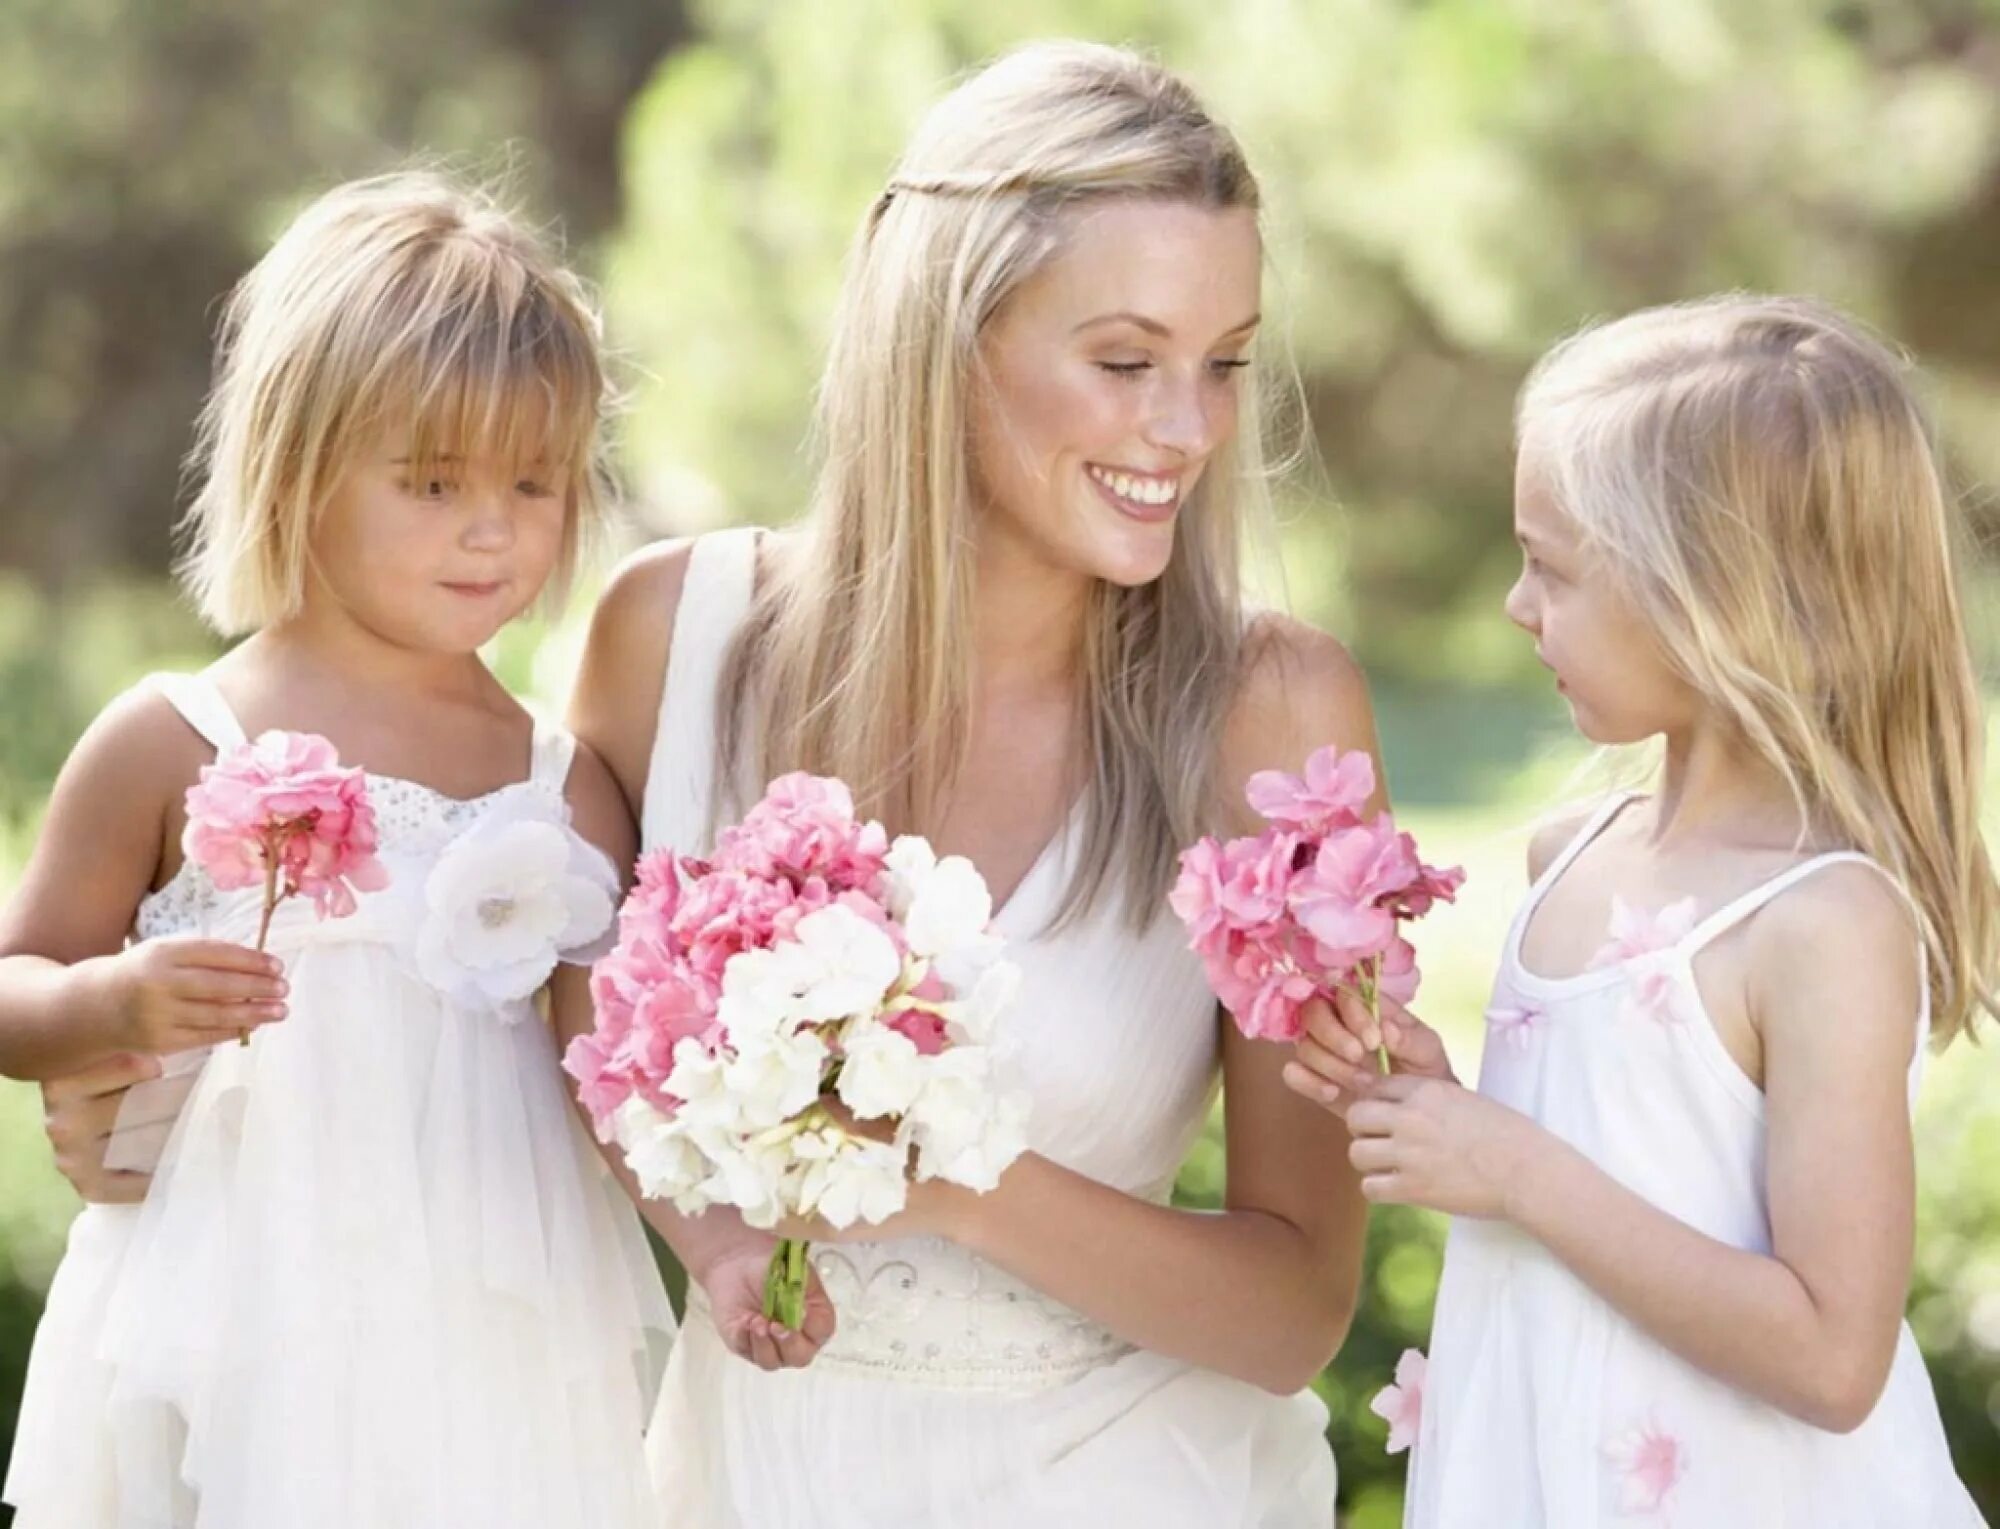 Www daughter. Мама и дочка. Мама с двумя детьми. Девочка с мамой. Мама с дочкой цветы.